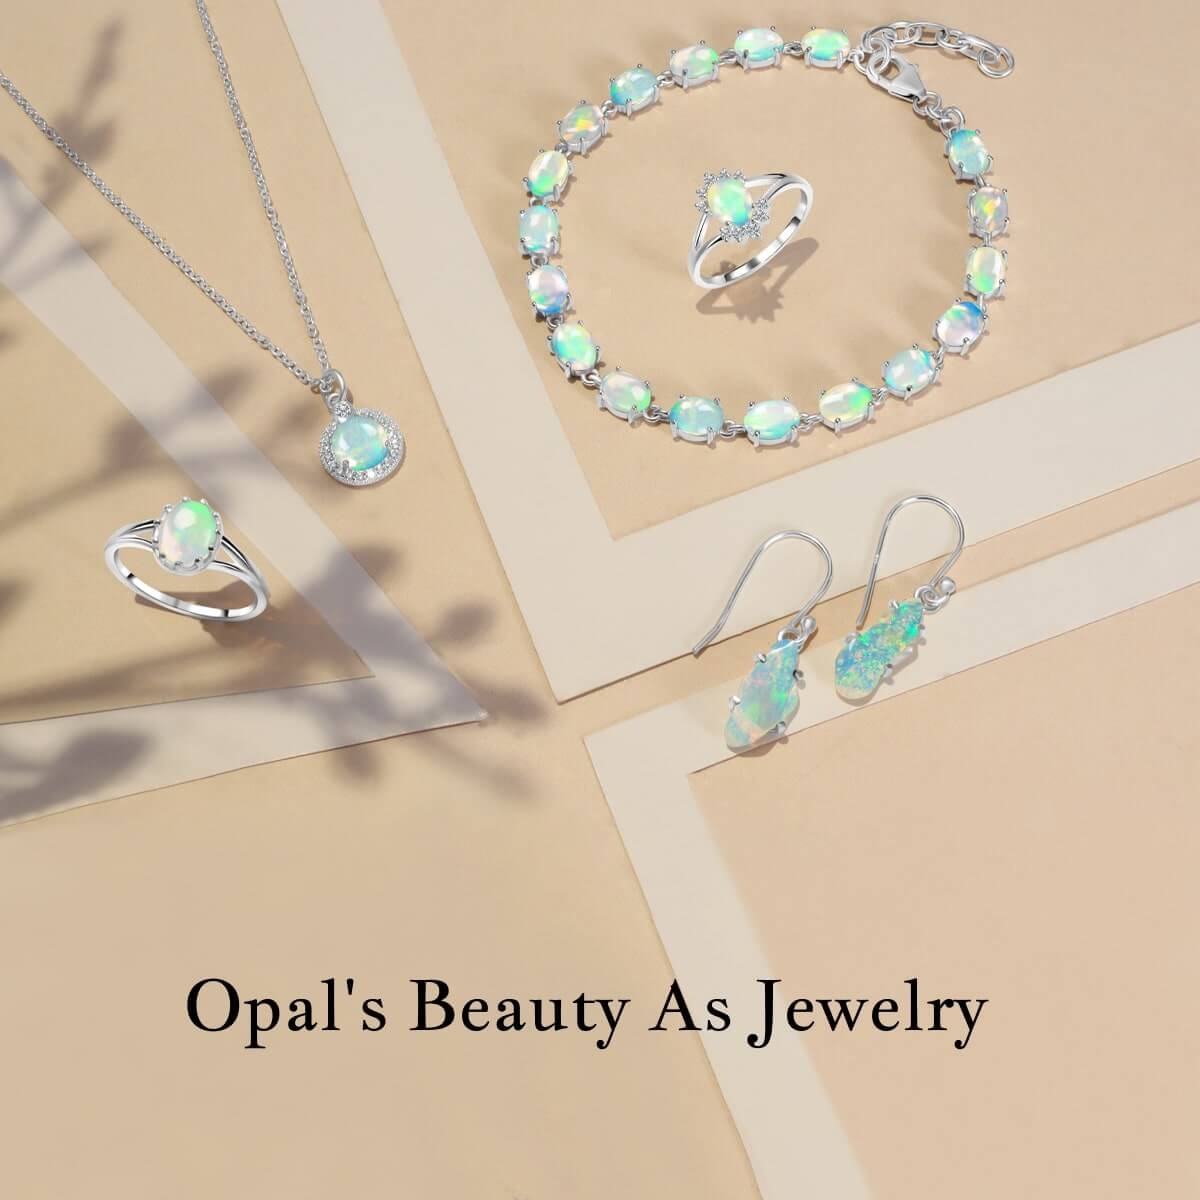 Opal's Beauty As Jewelry